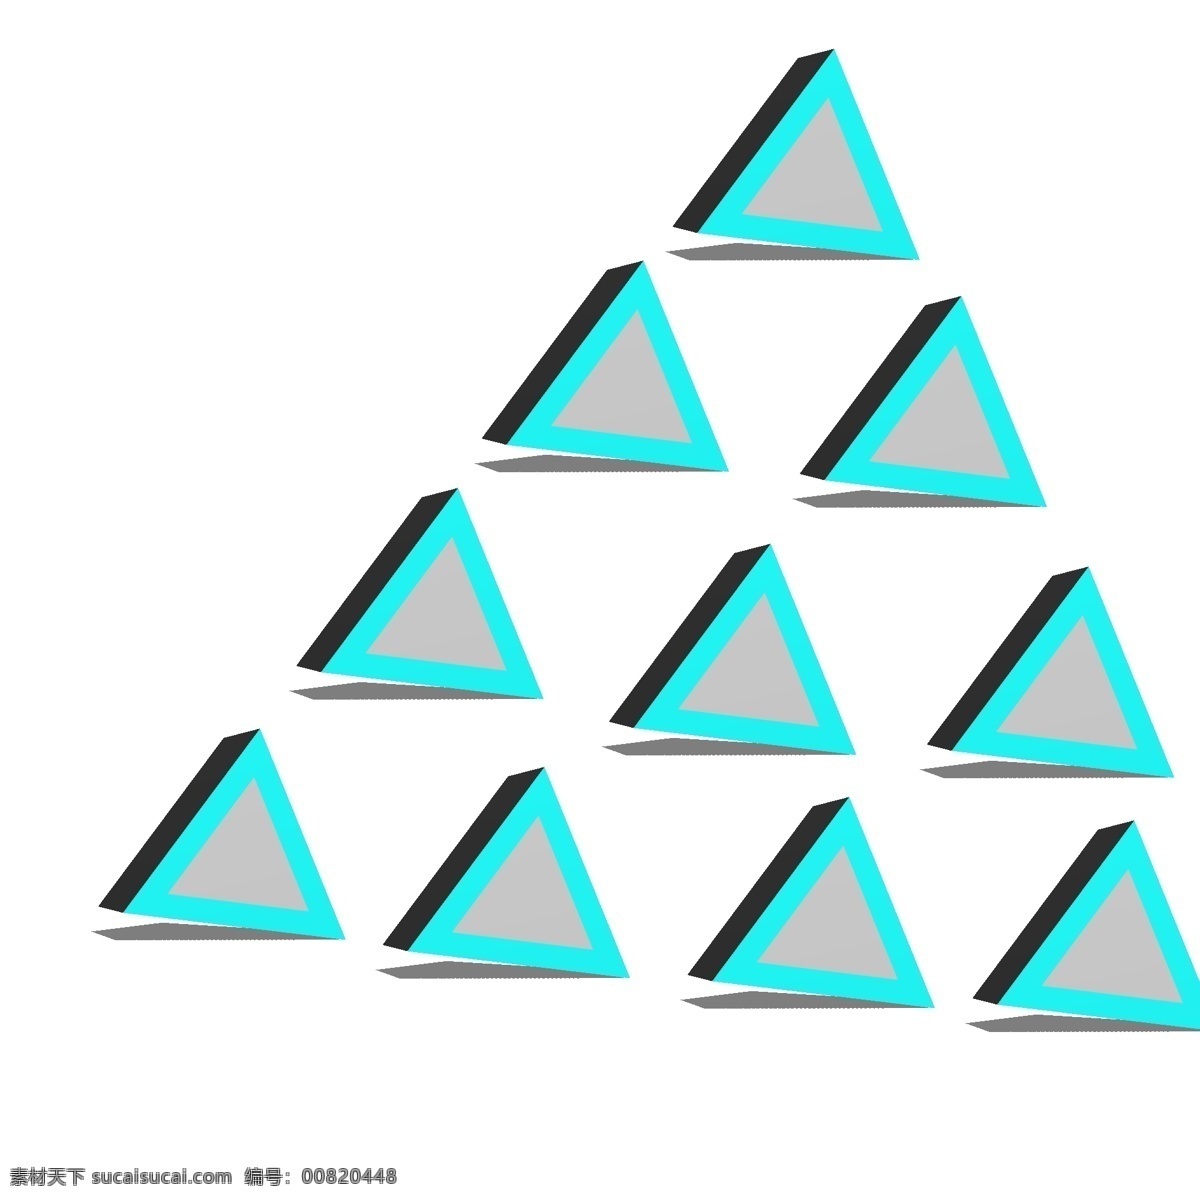 科技 不规则 图形 三角 锥 科学技术 信息技术 先进 科学 文明 不规则图形 冷色系 冷色调 几何图形 几何体 小物件 三角锥